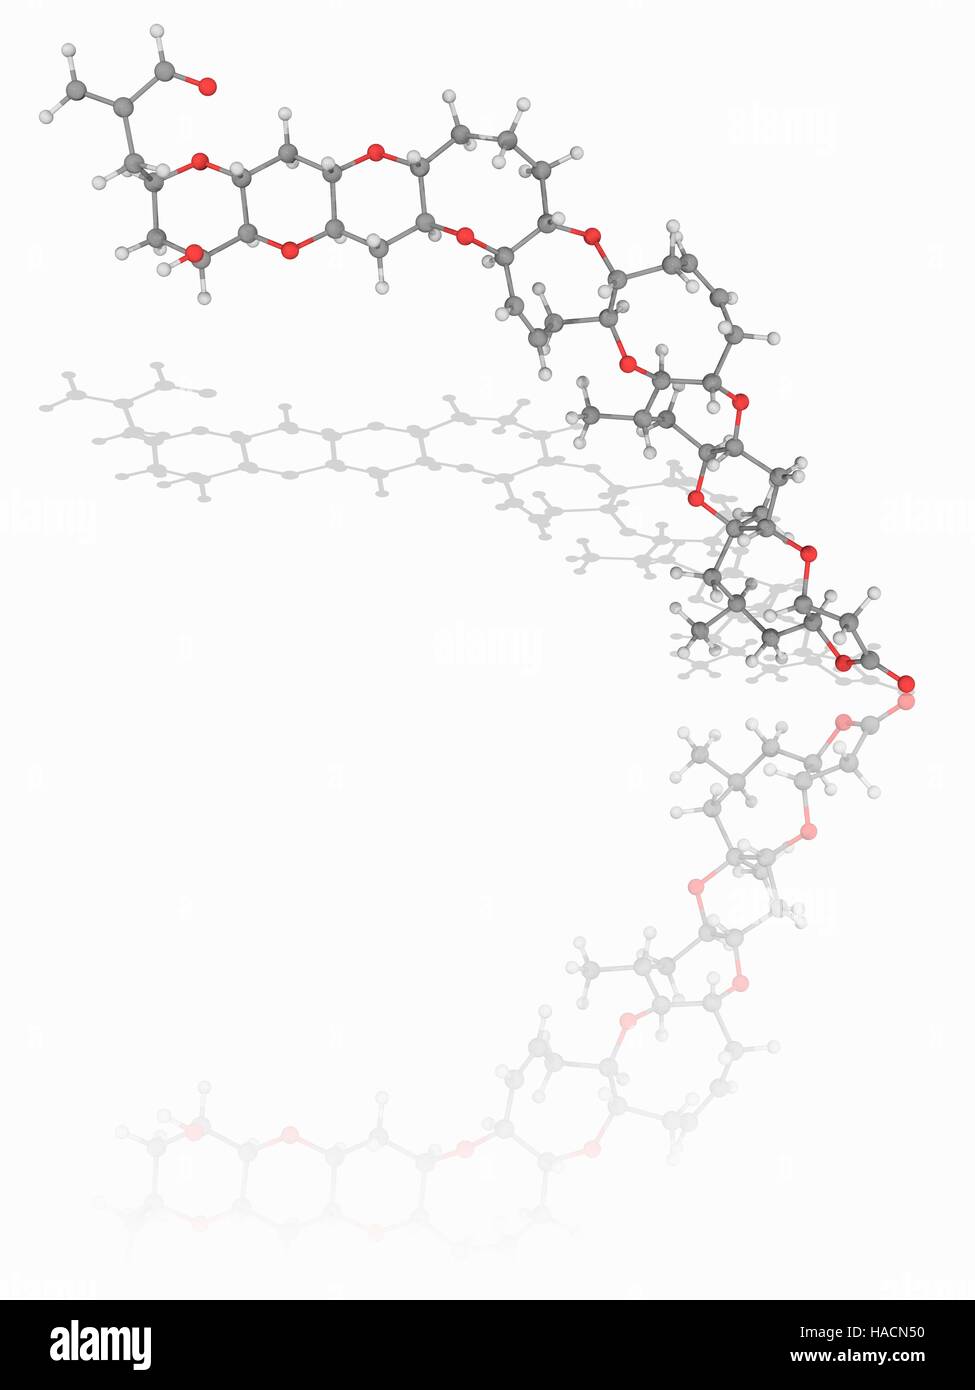 Brevetoxin. Il modello molecolare della neurotossina brevetoxin (C50.H70.O14). Questo prodotto chimico si lega alla tensione-gated canali di sodio nelle cellule nervose. Esso è di solito ingerito attraverso la contaminazione dei molluschi e provoca la condizione nota come neurotossica Shellfish Poisoning (NSP) atomi sono rappresentati come sfere e sono codificati a colori: carbonio (grigio), Idrogeno (bianco) e ossigeno (rosso). Illustrazione. Foto Stock